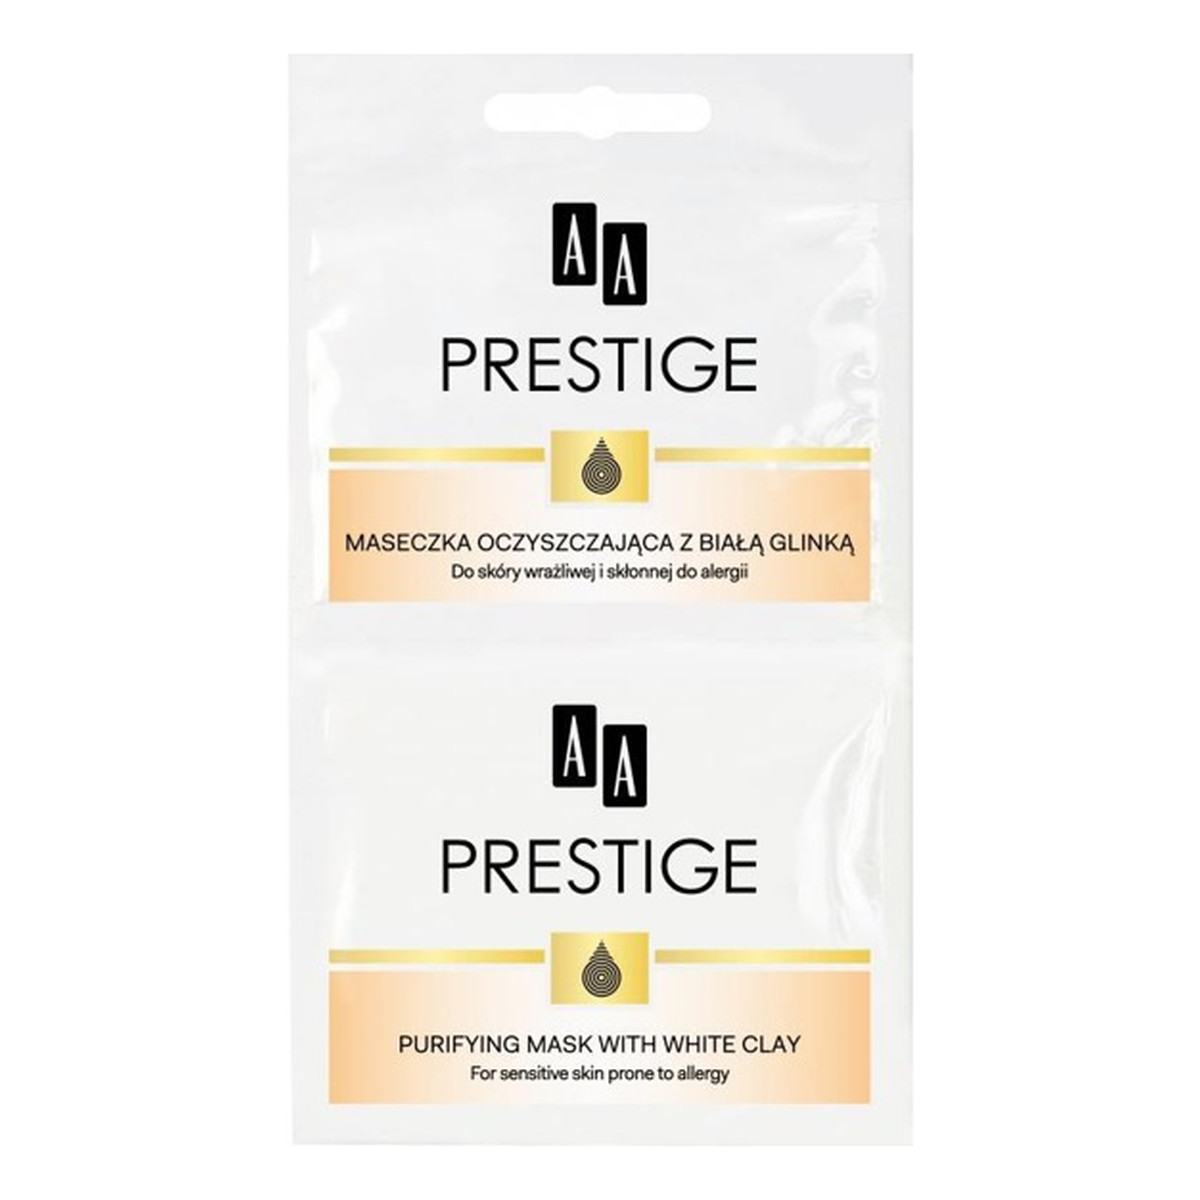 AA Prestige Maseczka Oczyszczająca z Białą Glinką 10ml